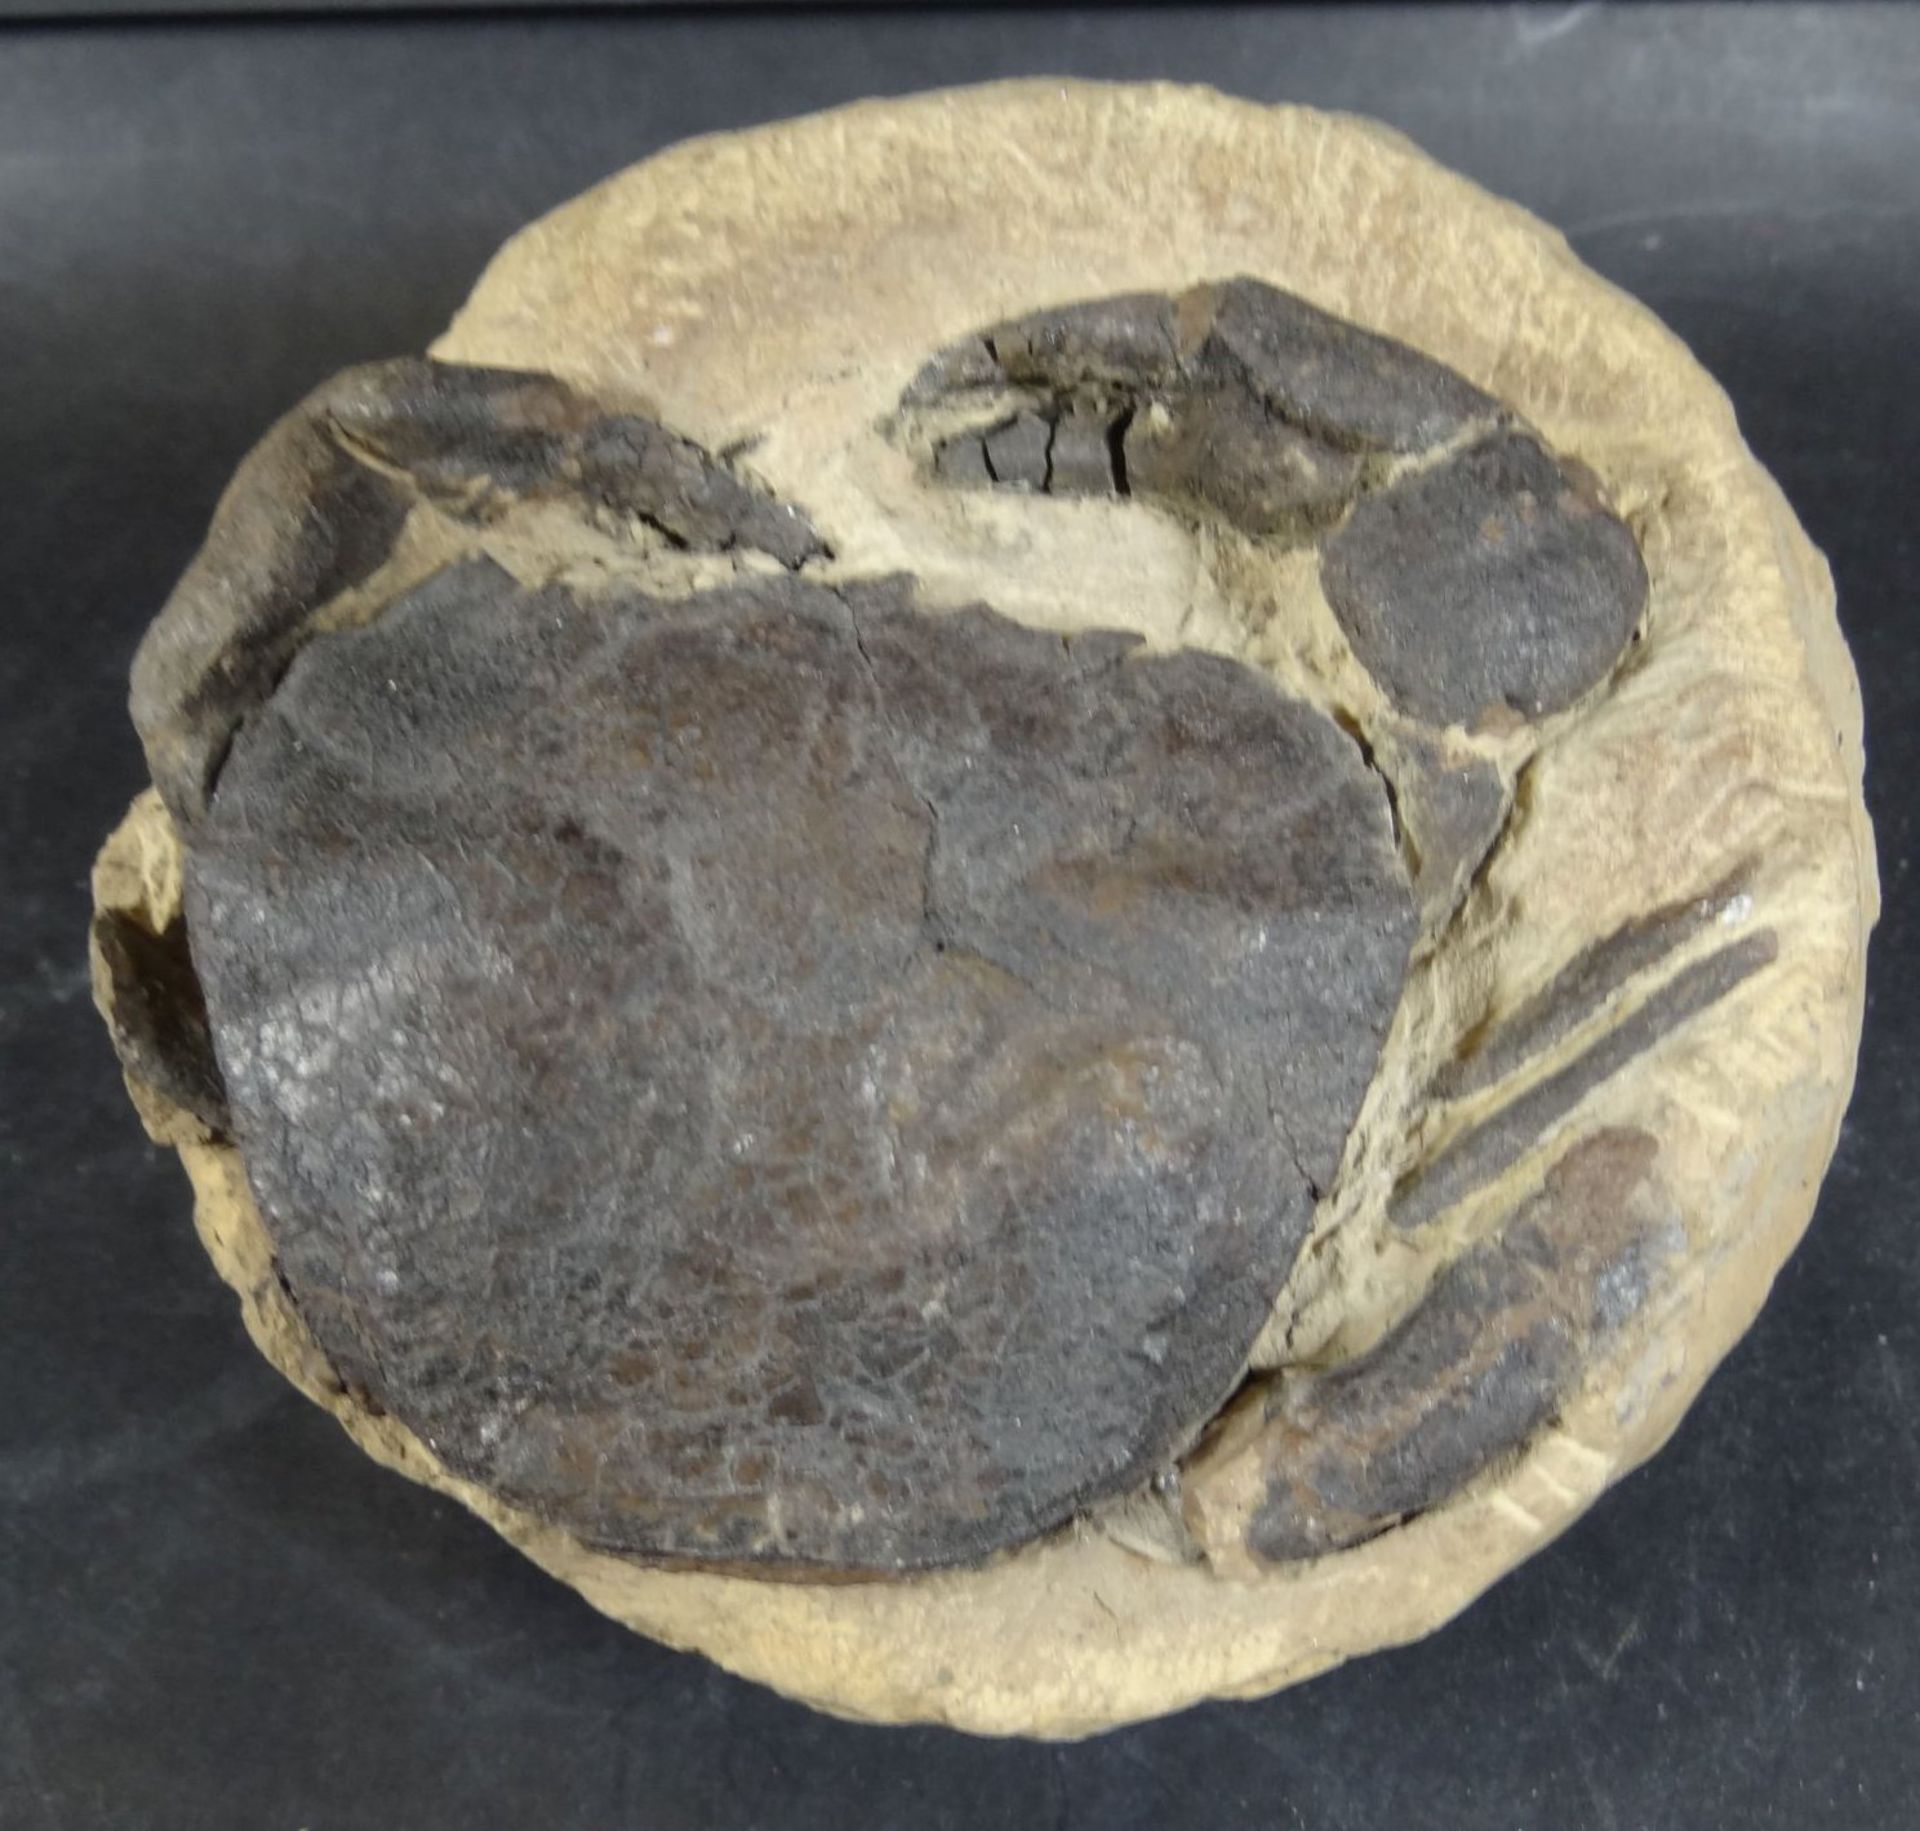 gr. versteinerte Krabbe "Coeloma balticum Schlueter", Fundort Dänemark, H-8,5 cm, 12x12 c - Bild 2 aus 5